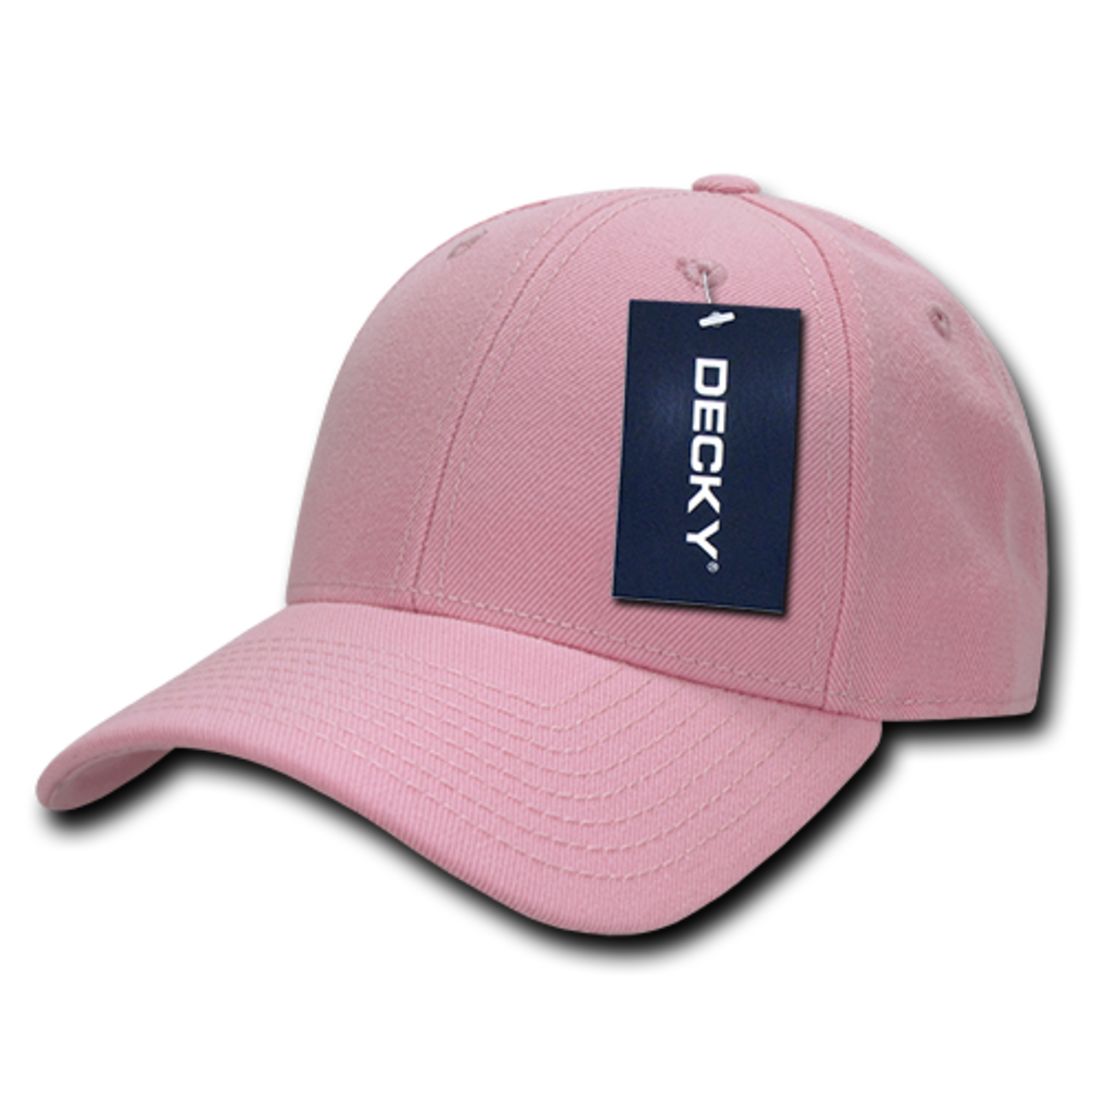 Pink color variant